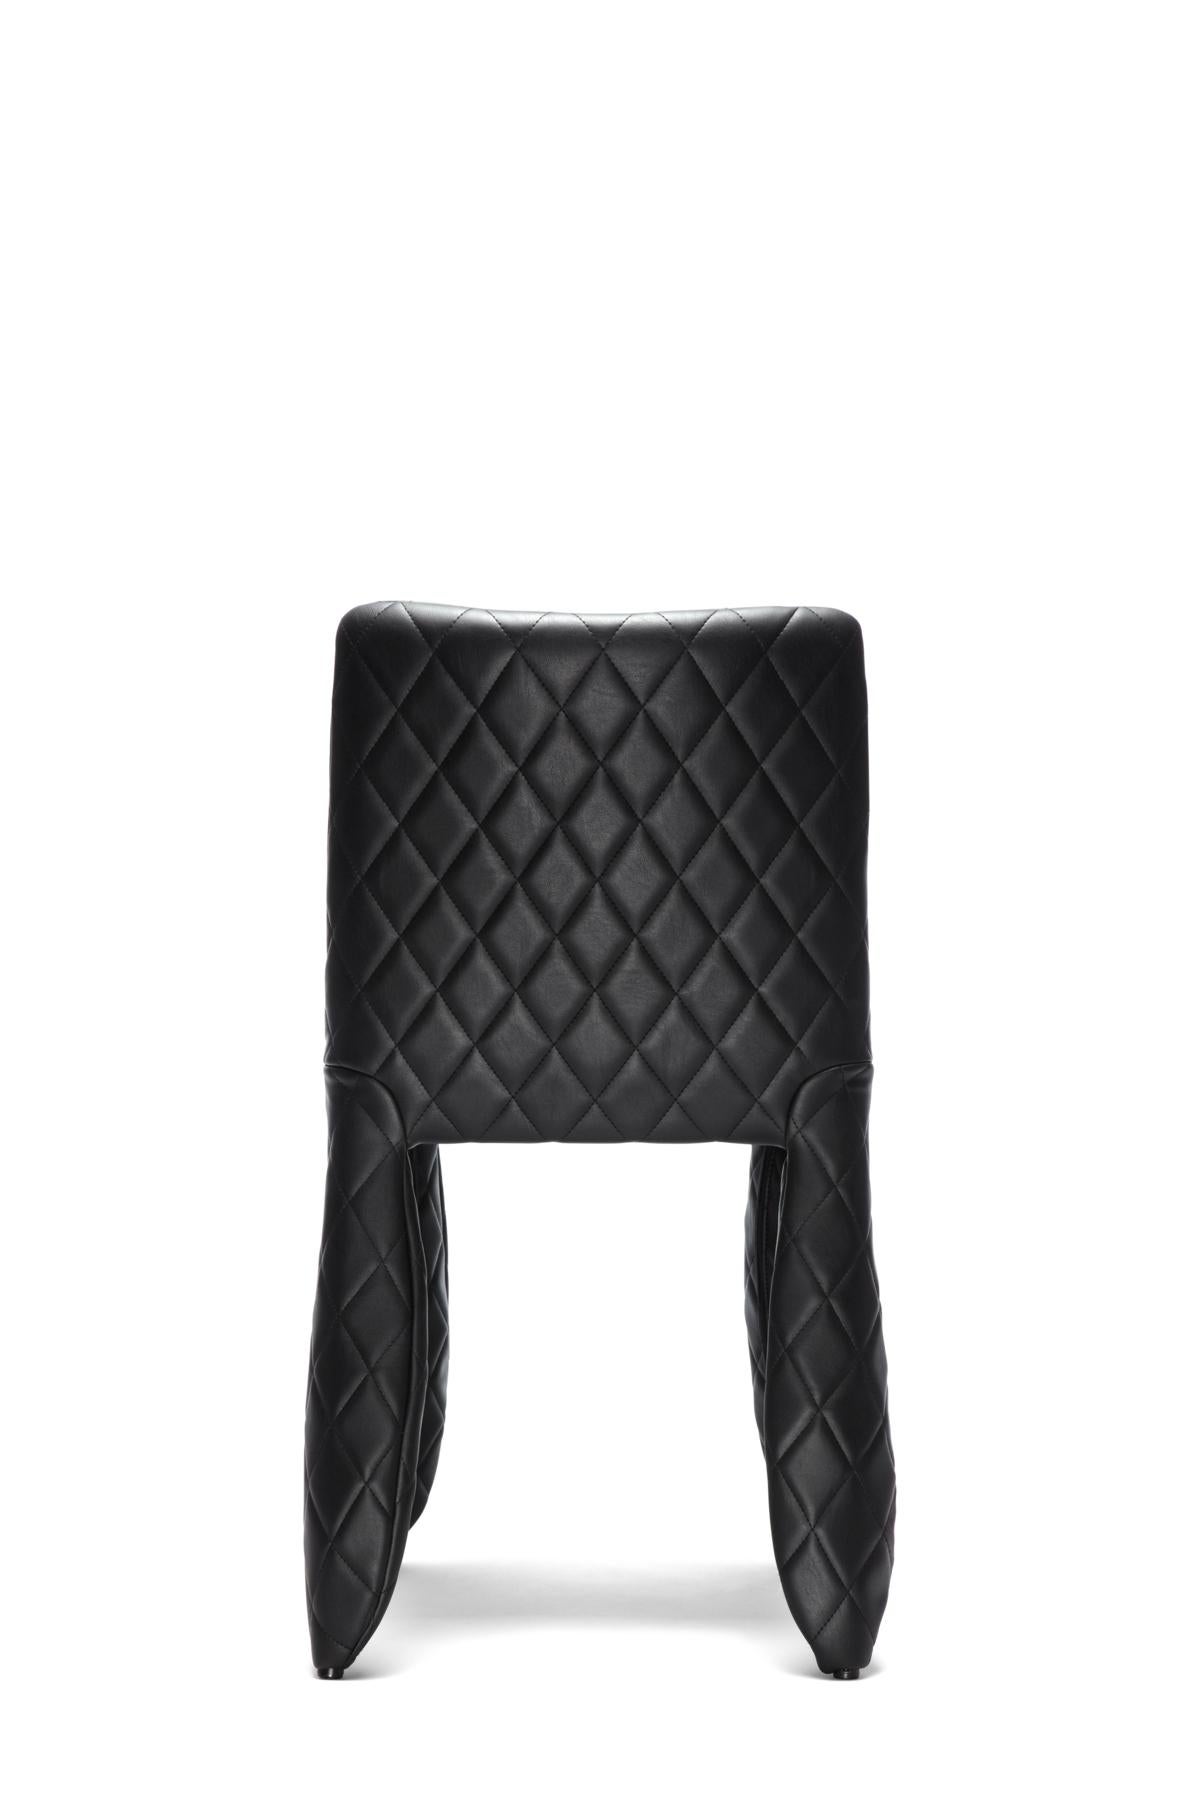 Modern Moooi Monster Diamond Chair in Black Upholstery For Sale